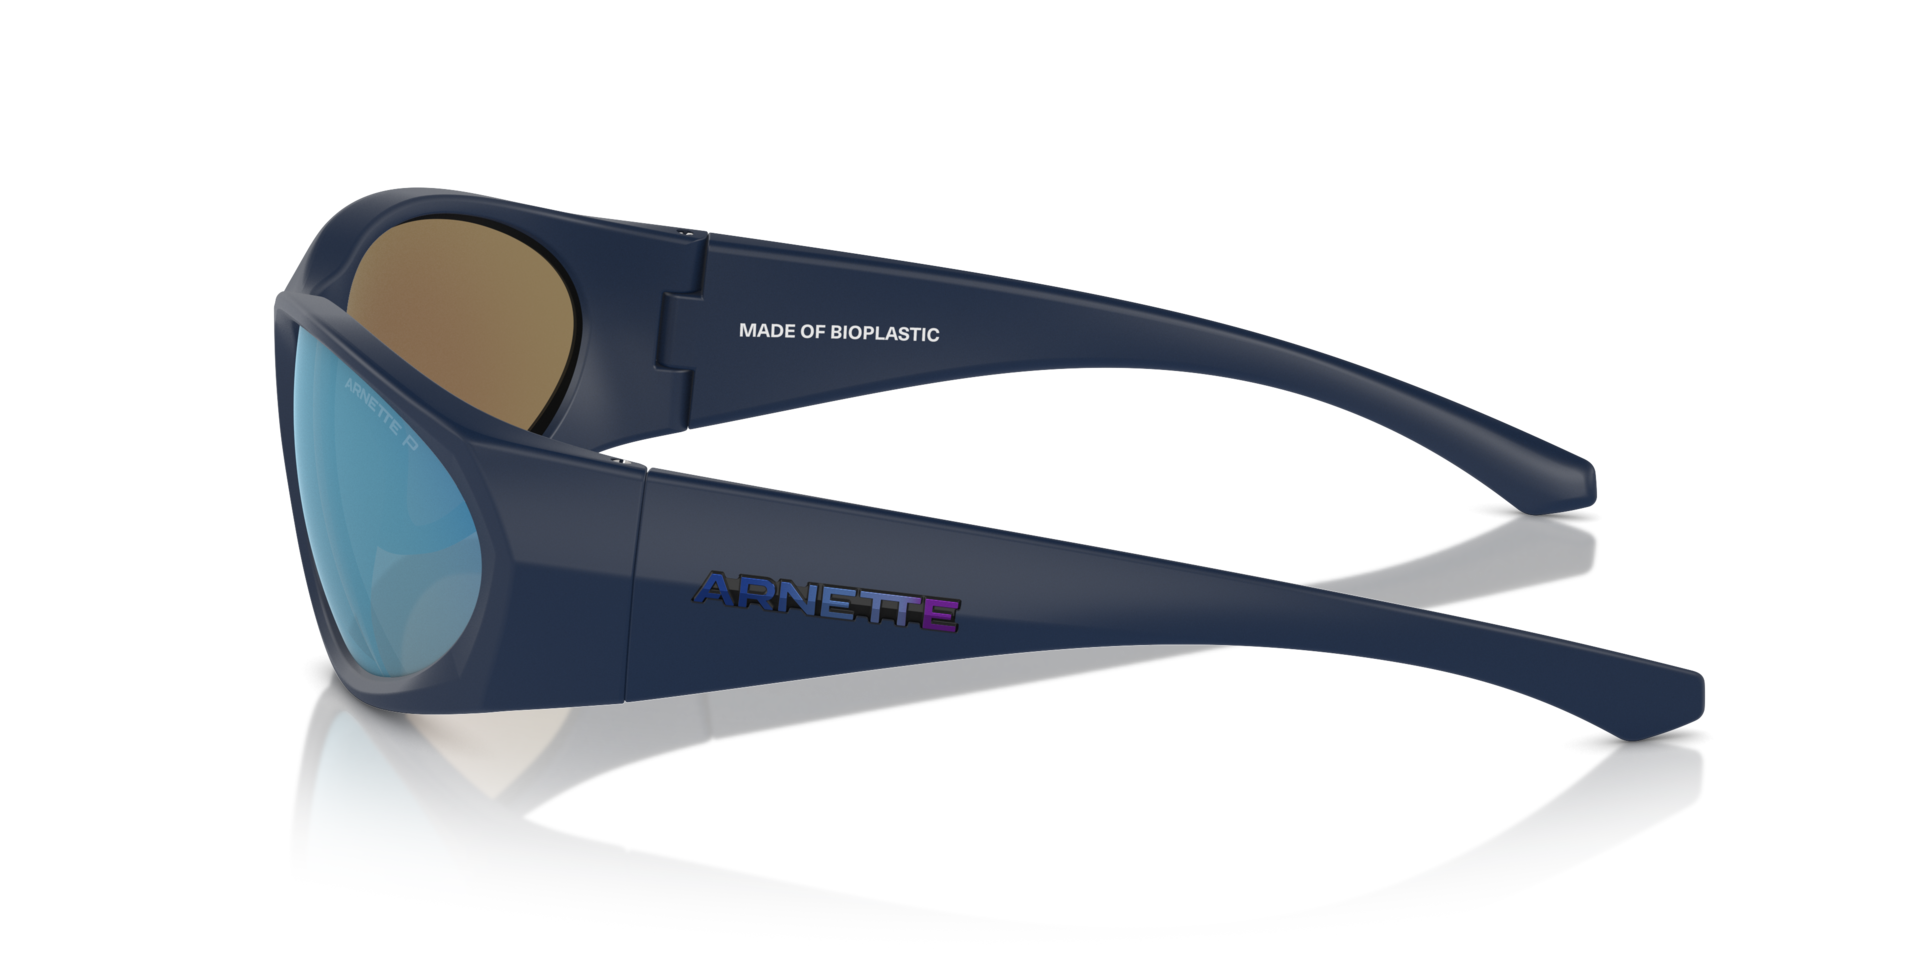 Das Bild zeigt die Sonnenbrille AN4342 275922 von der Marke Arnette in schwarz/blau.